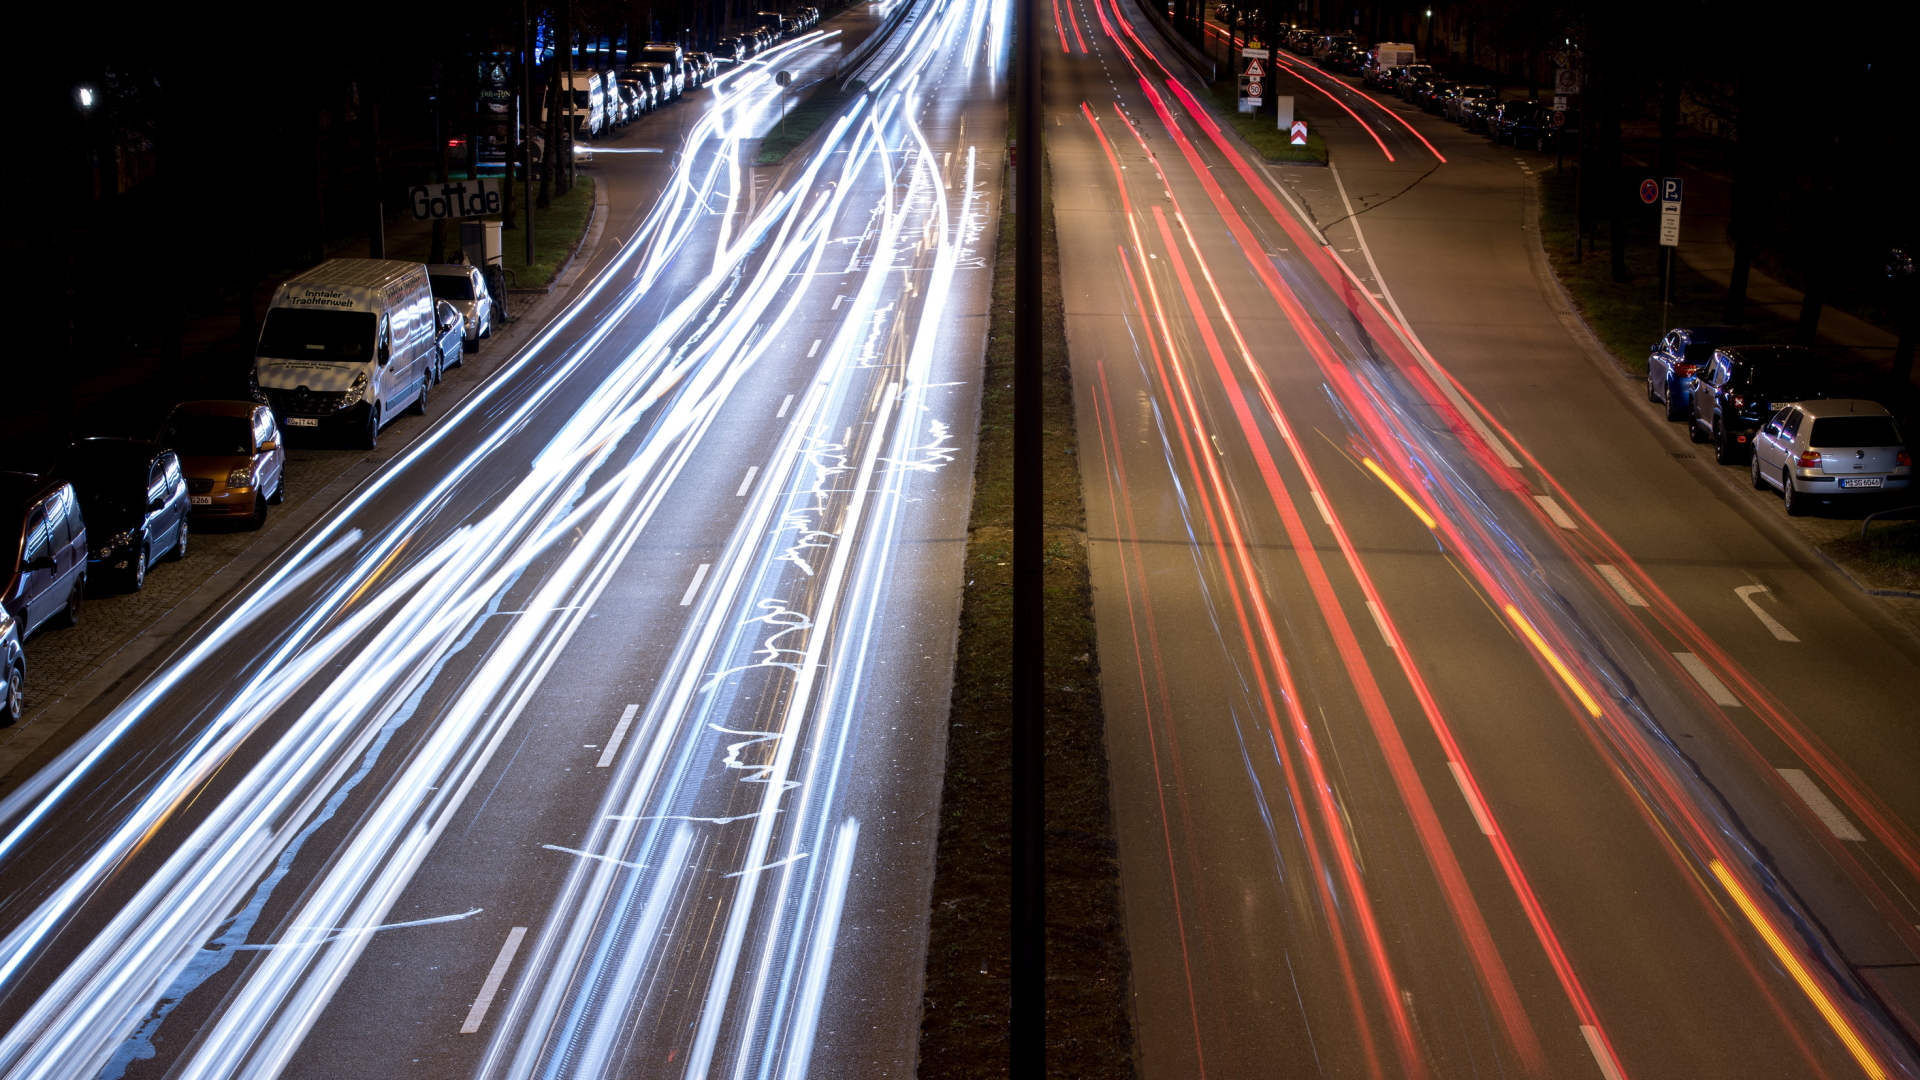 Fahrzeuge auf einer Münchener Straße hinterlassen bunte Lichtspuren. | dpa